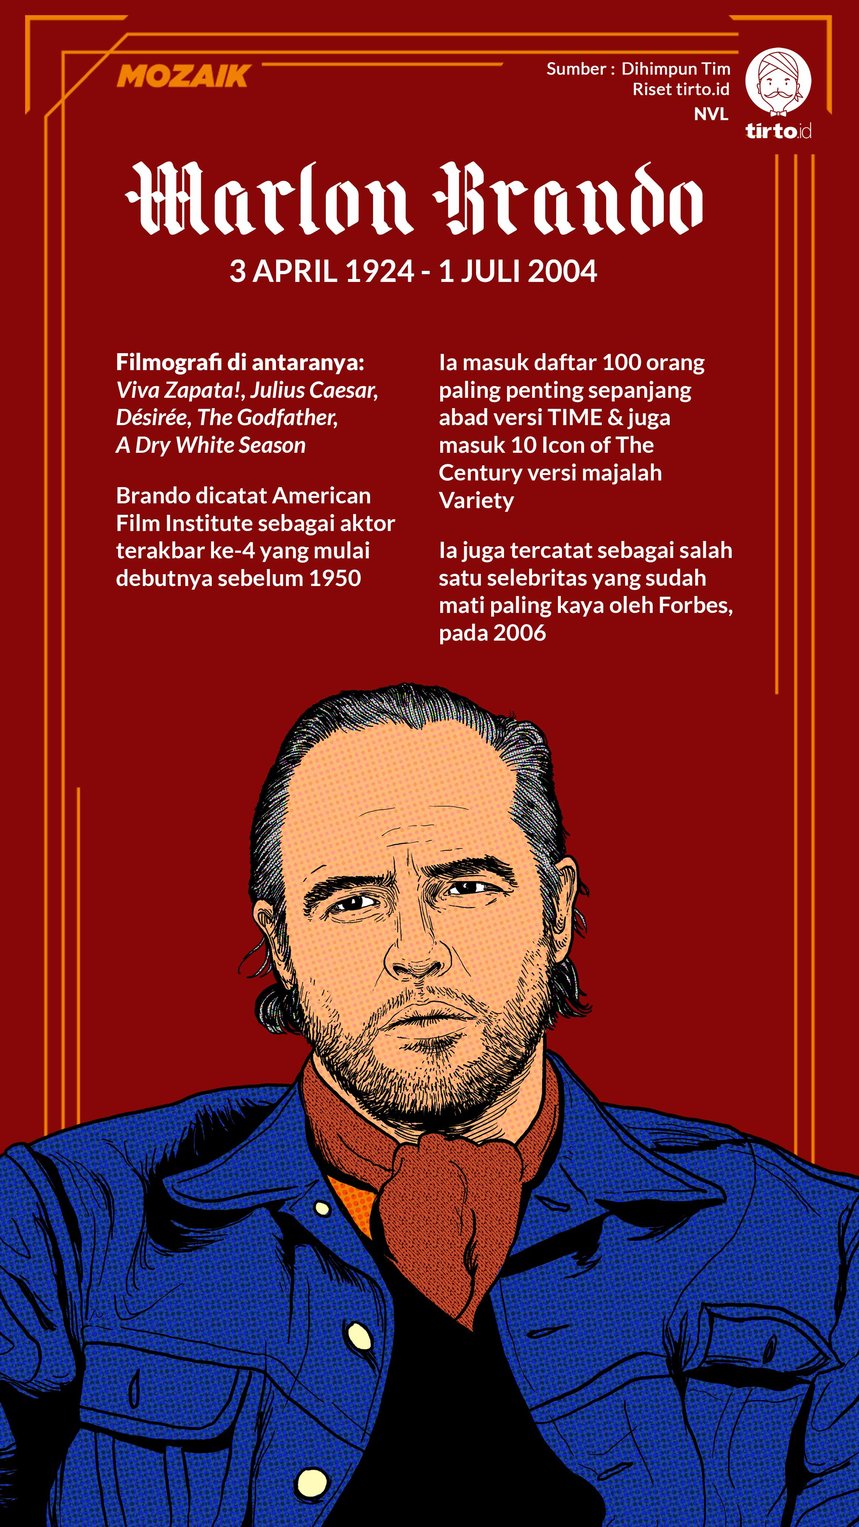 Infografik Mozaik Marlon Brando